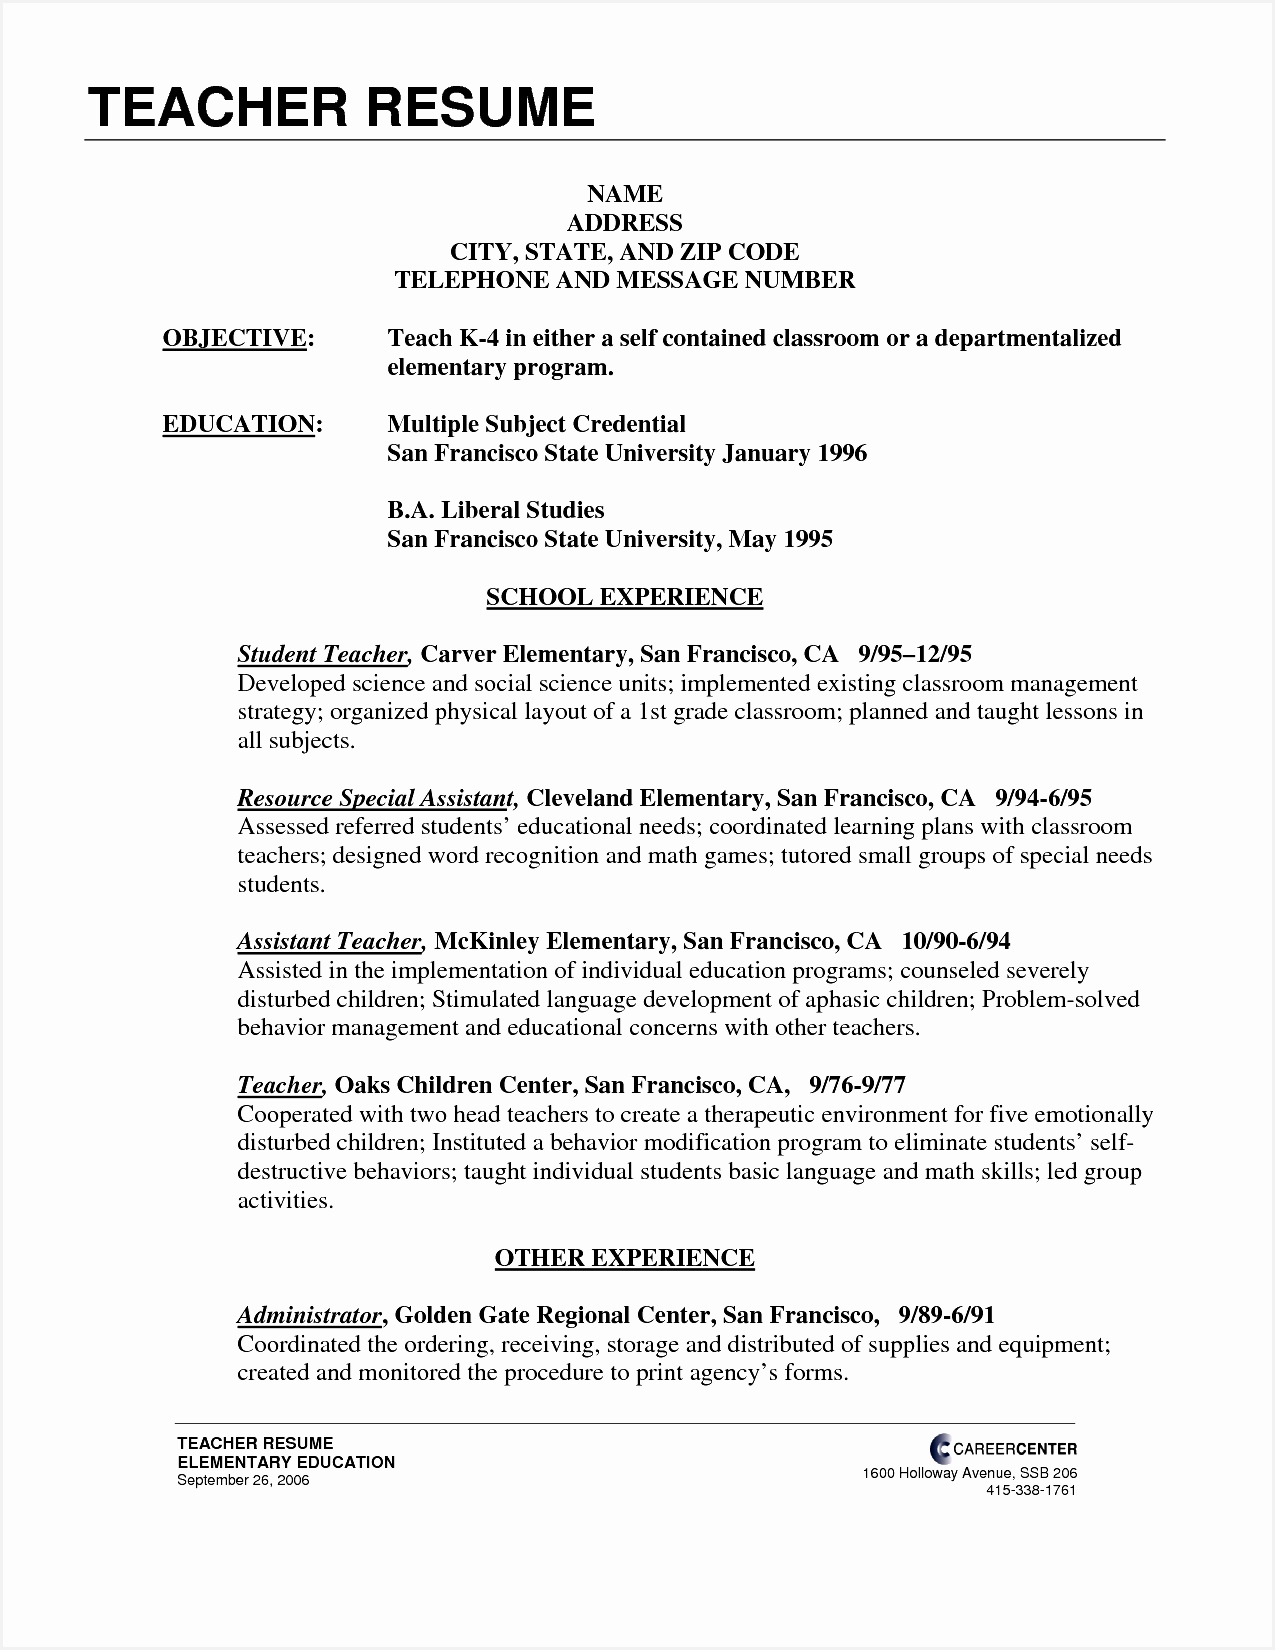 free free sample resume for kindergarten teacher remarkable resume sample teacher elementary in kindergarten16501275